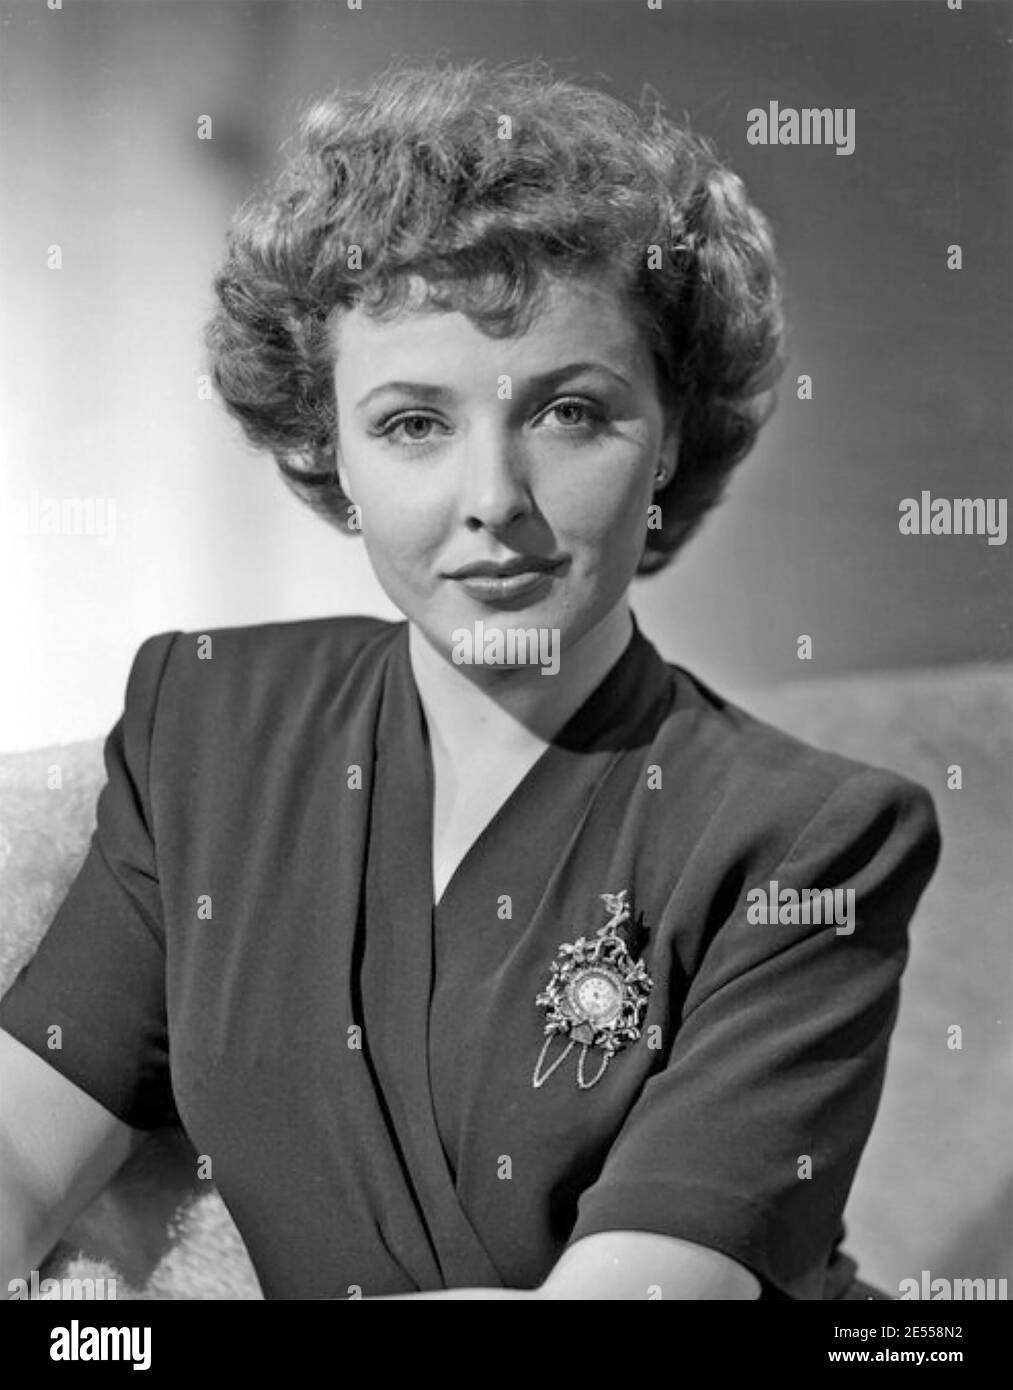 LALAINE DAY (1920-2007) actrice américaine de cinéma, radio et télévision commentateur à propos de 1942 Banque D'Images